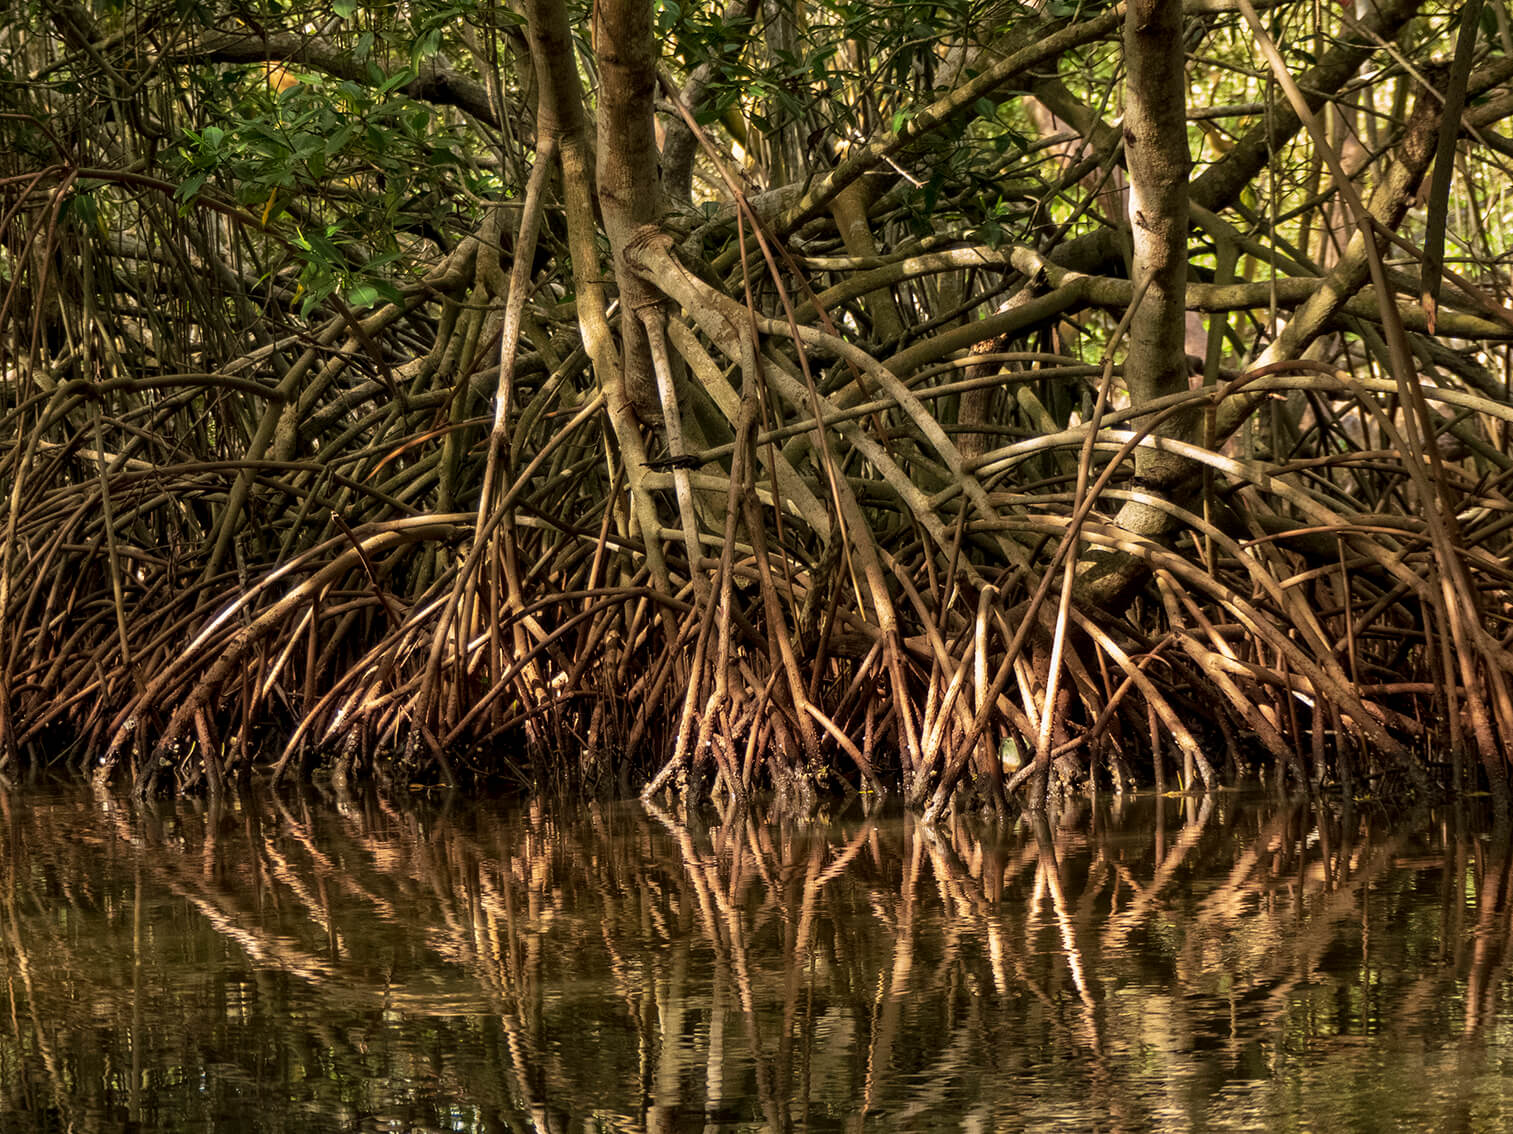 En un manglar una comunidad recupera el ecosistema. Los árboles de mangle sacan sus raíces y parecen caminar en el agua.